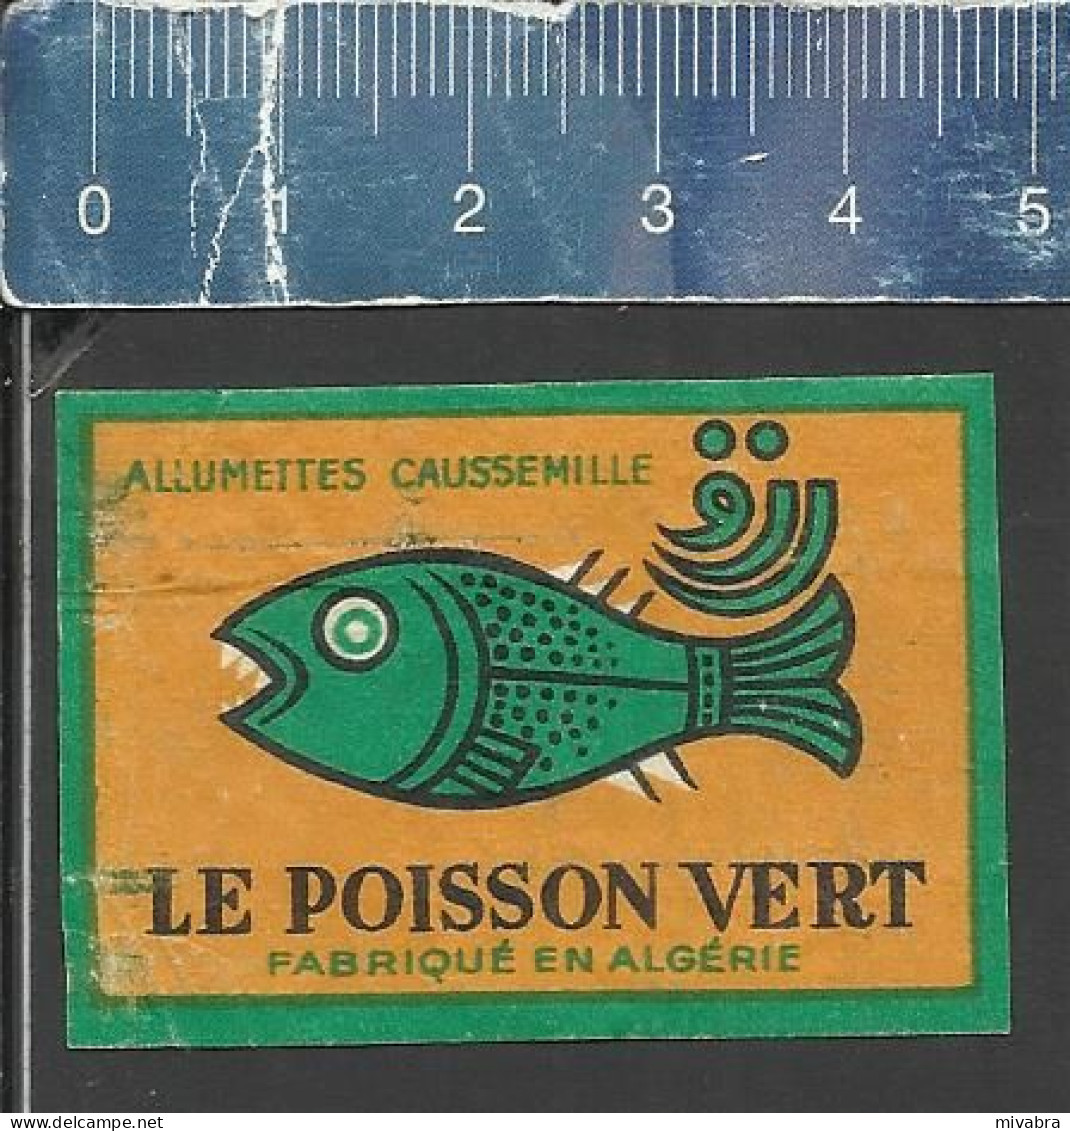 LE POISSON VERT - OLD MATCHBOX LABEL ALGERIA - AMMUMETTES CAUSSEMILLE - Boites D'allumettes - Etiquettes